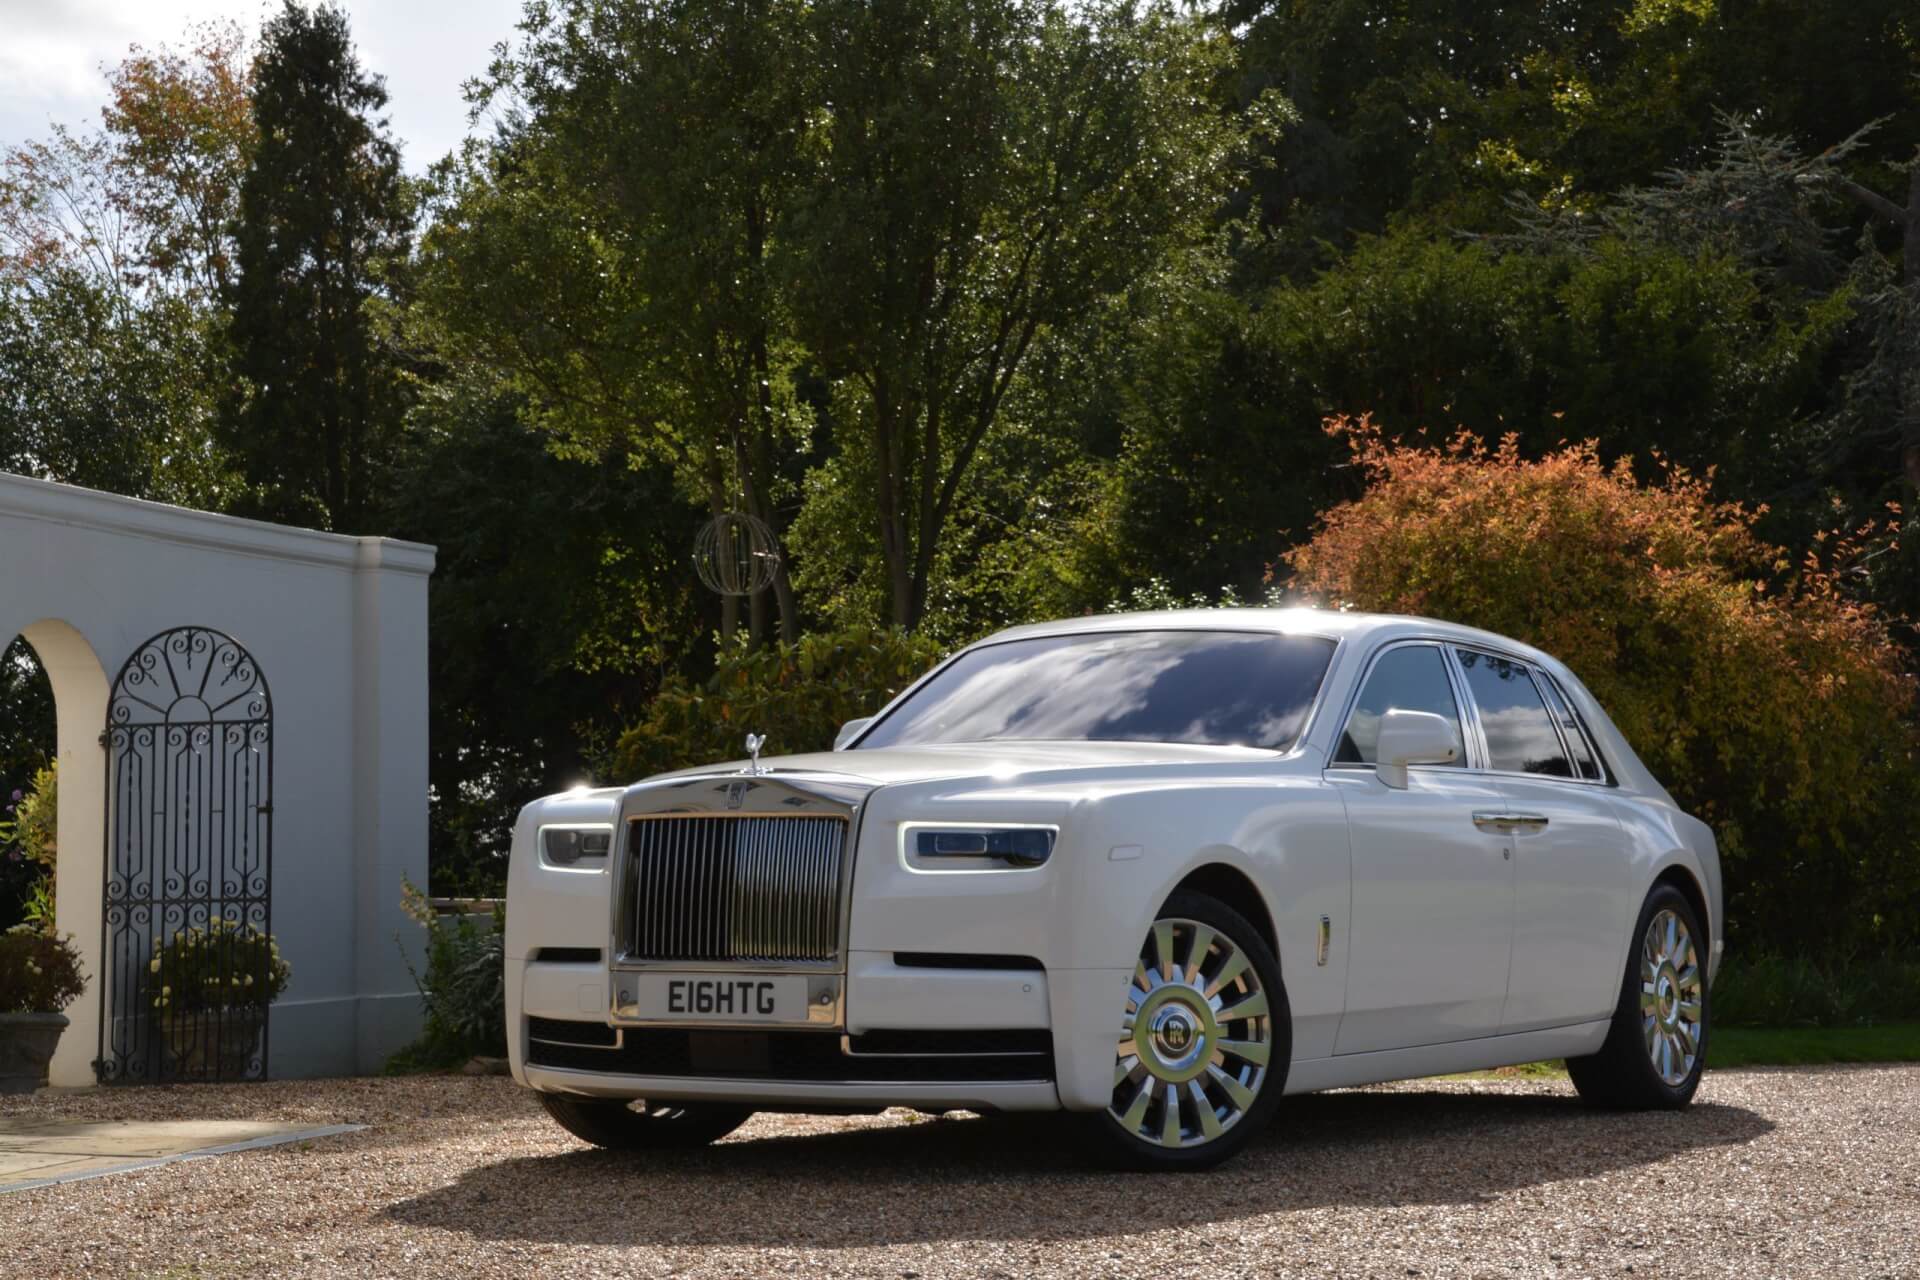 Rolls Royce Phantom 8 hire in London